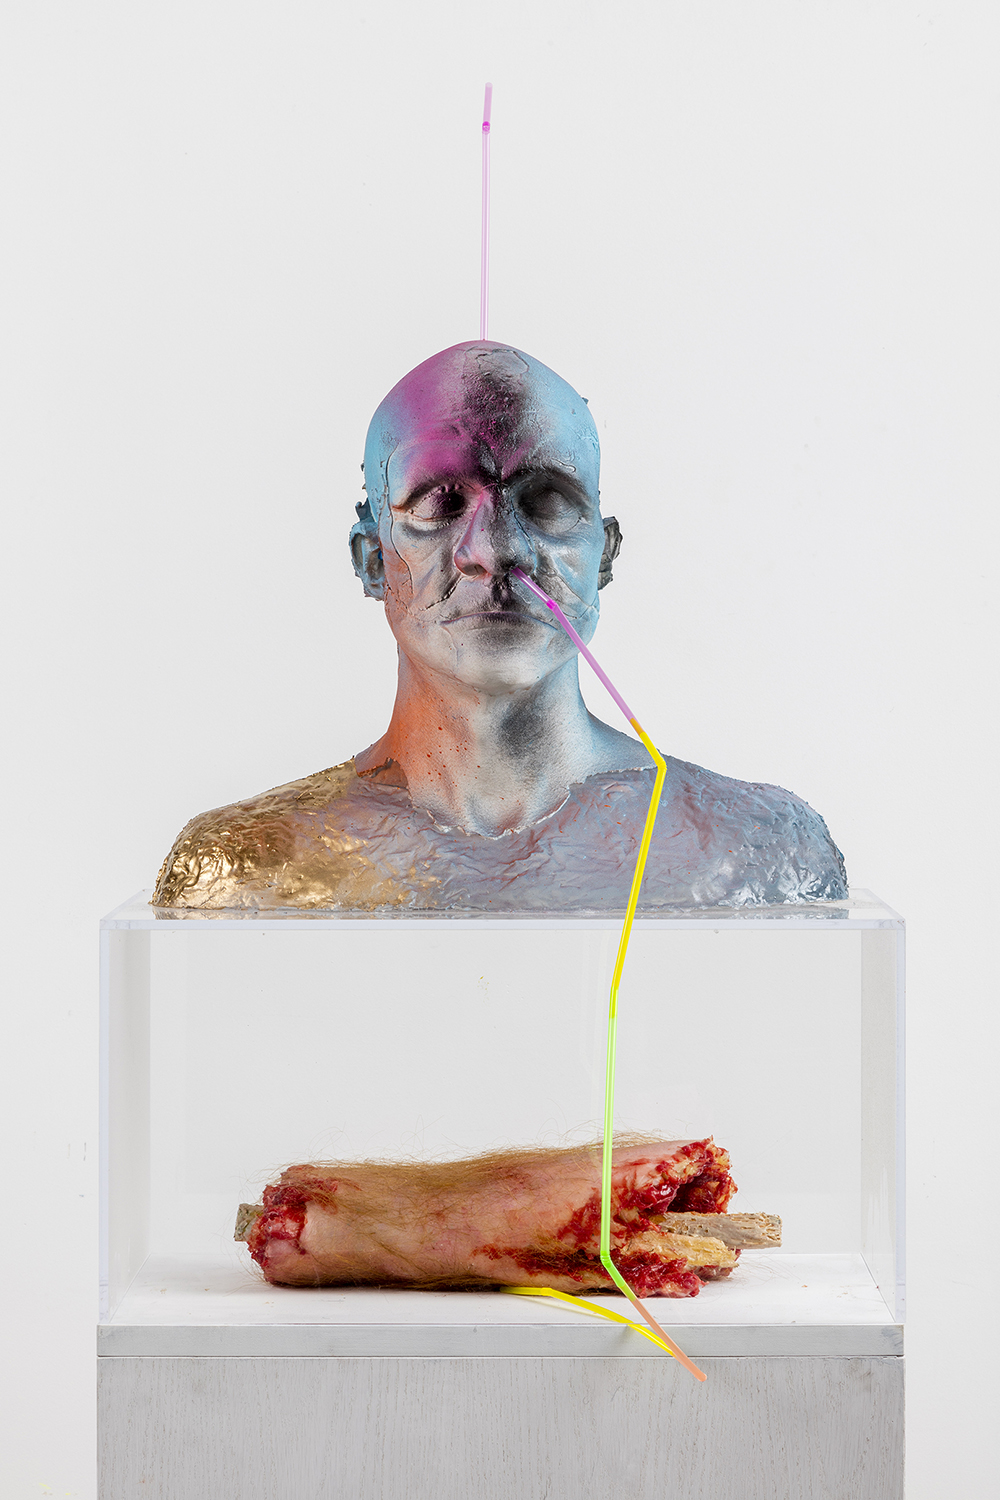 Gold Brain System (2016). Натаниел Меллорс (Nathaniel Mellors) - современный британский художник, автор инсталляций, скульптор, музыкант